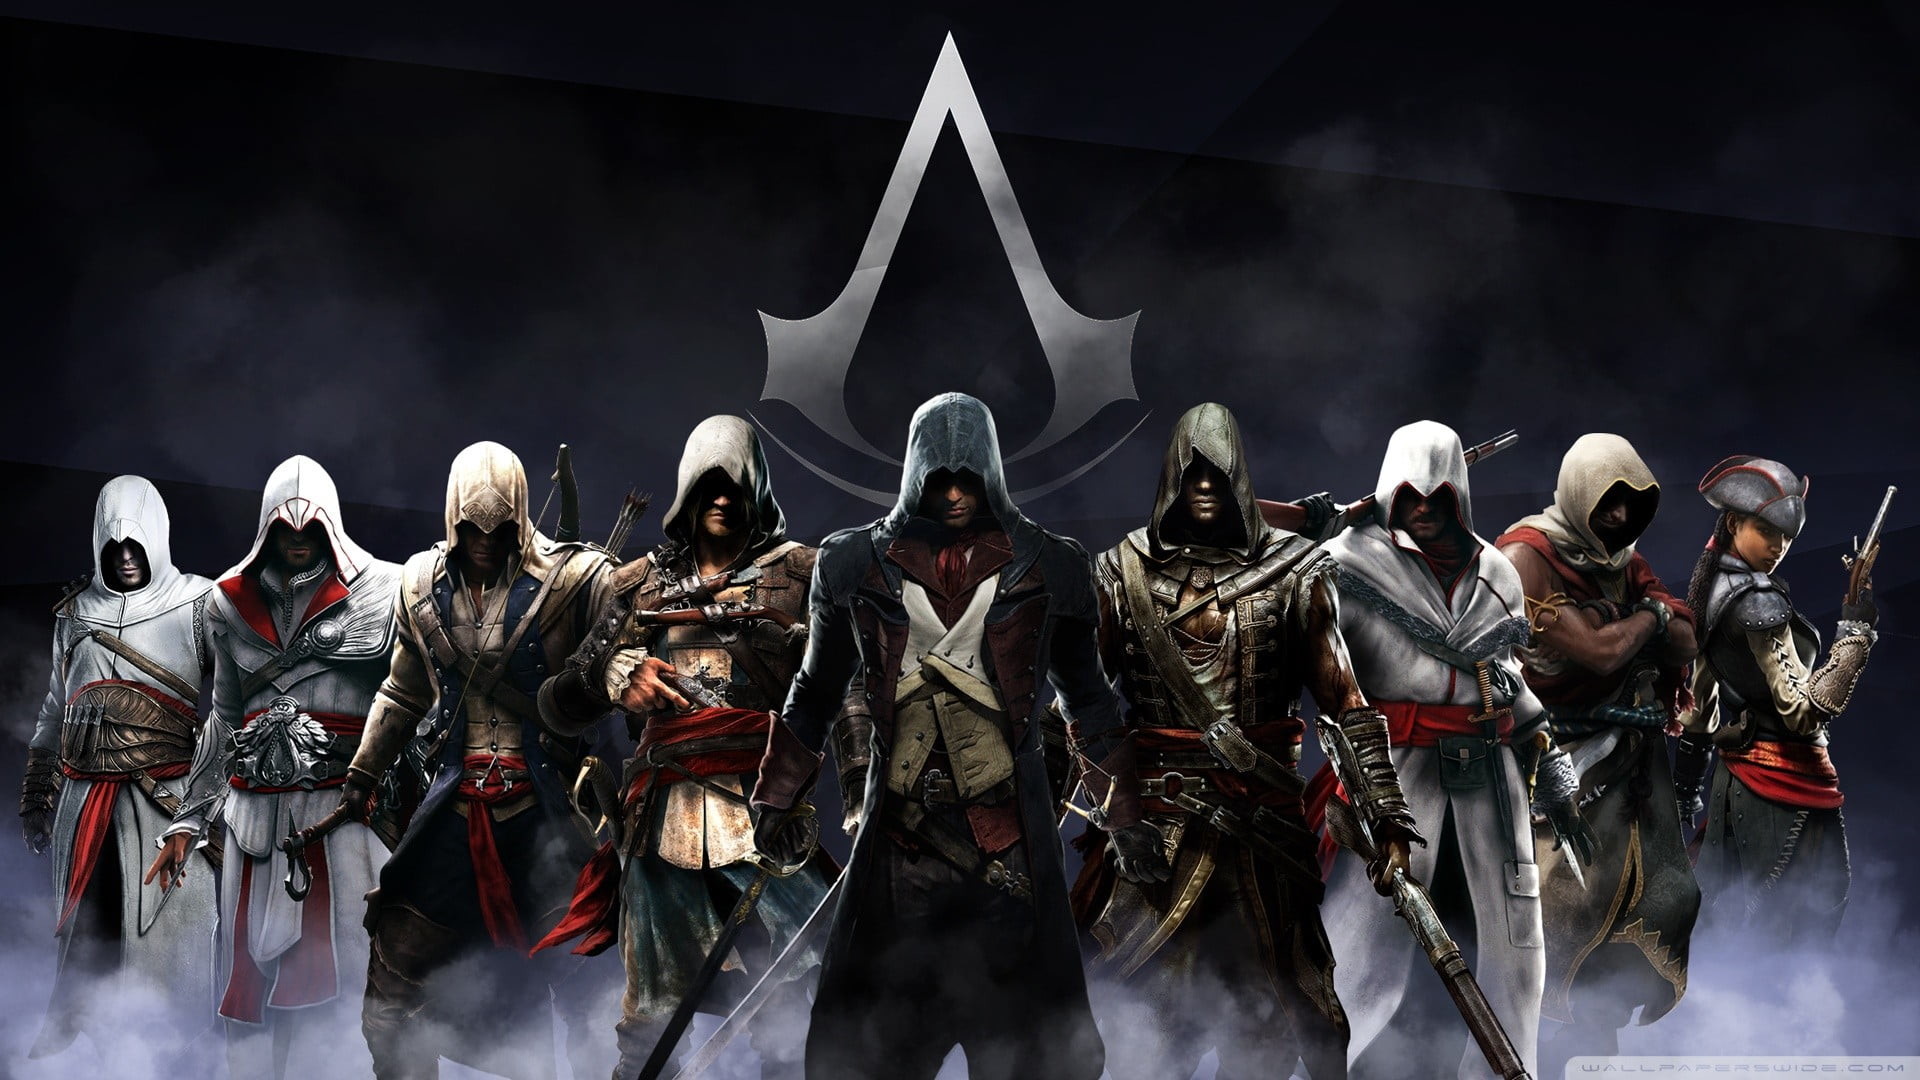 1920x1080 Assassin's Creed digital wallpaper, Assassin's Creed, video games, AltaÃ¯r  Ibn-La'